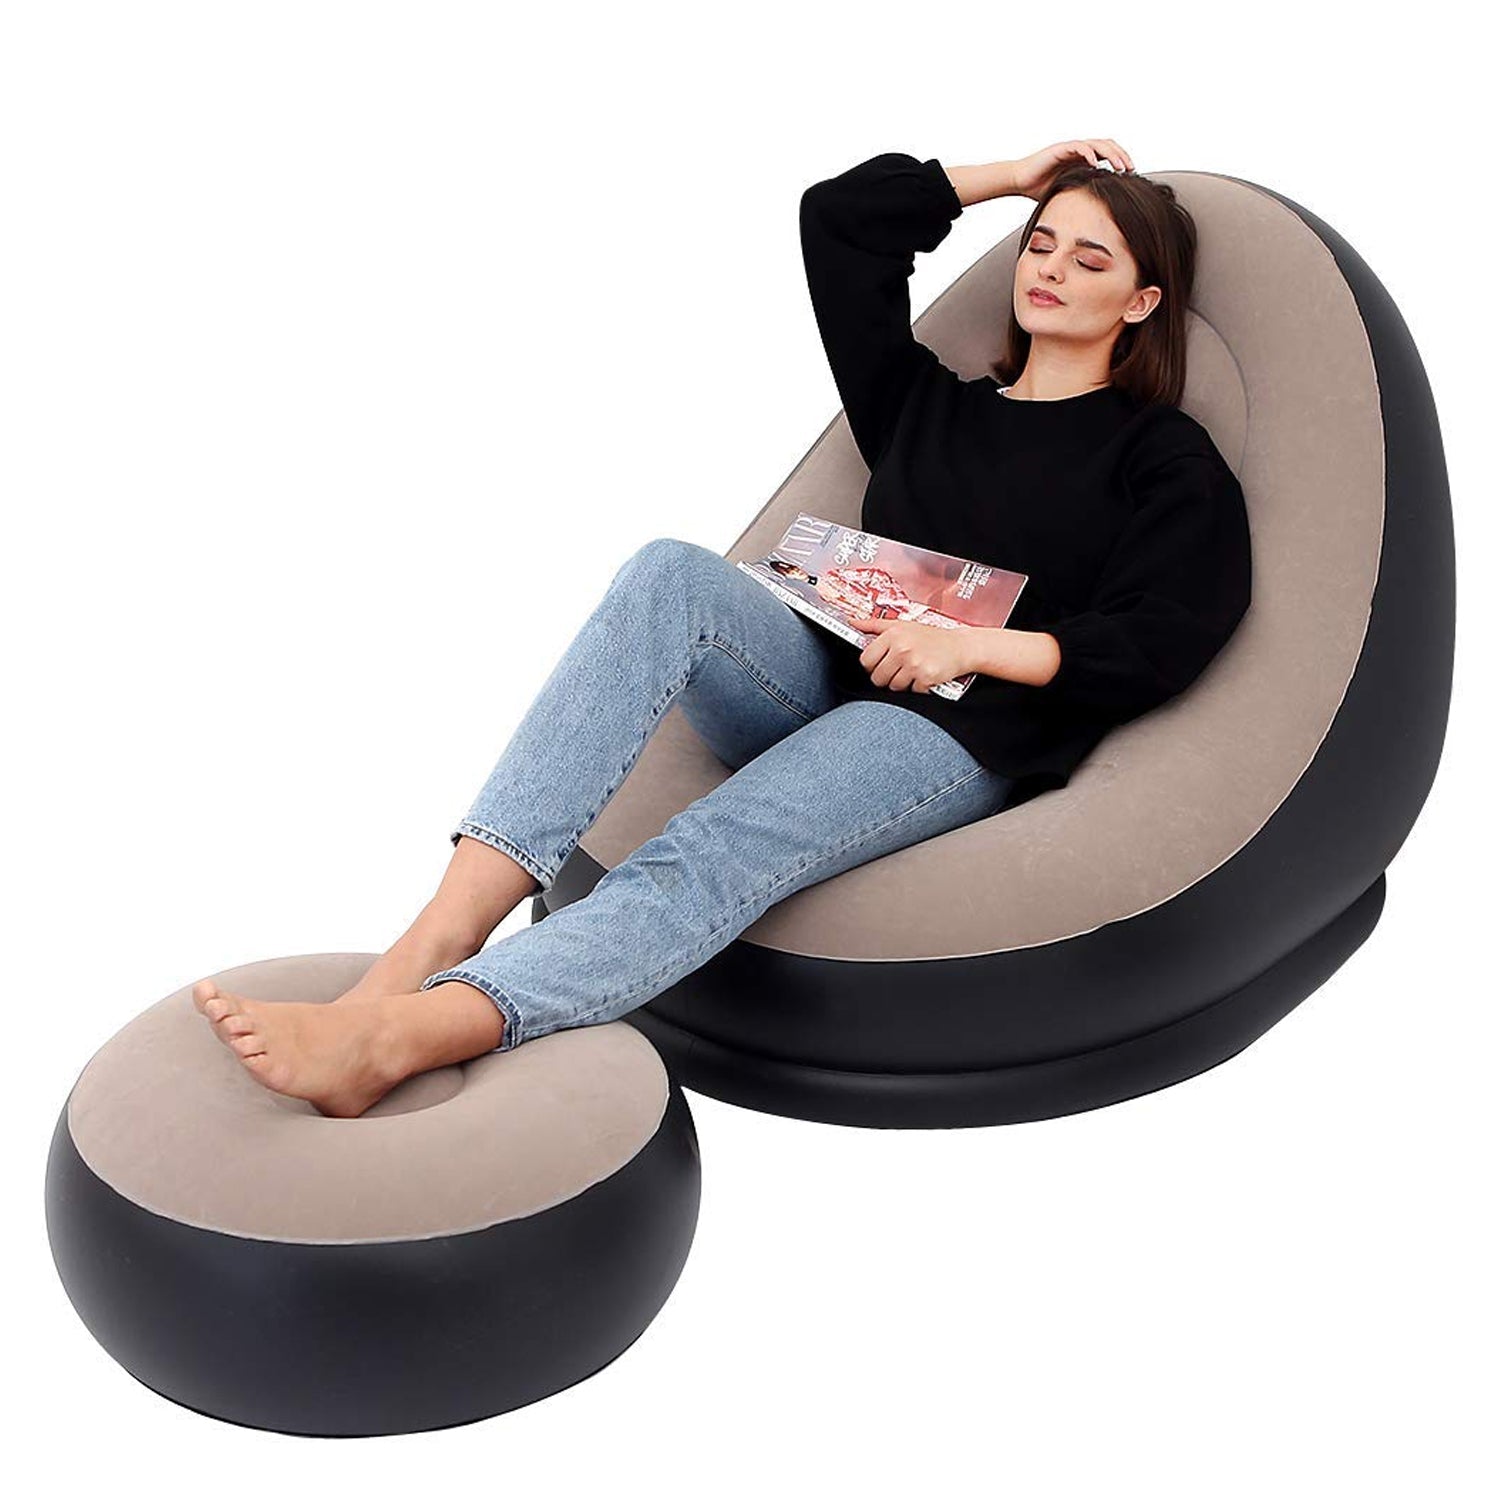 Inflatable Sofa Lounge Chair Ottoman